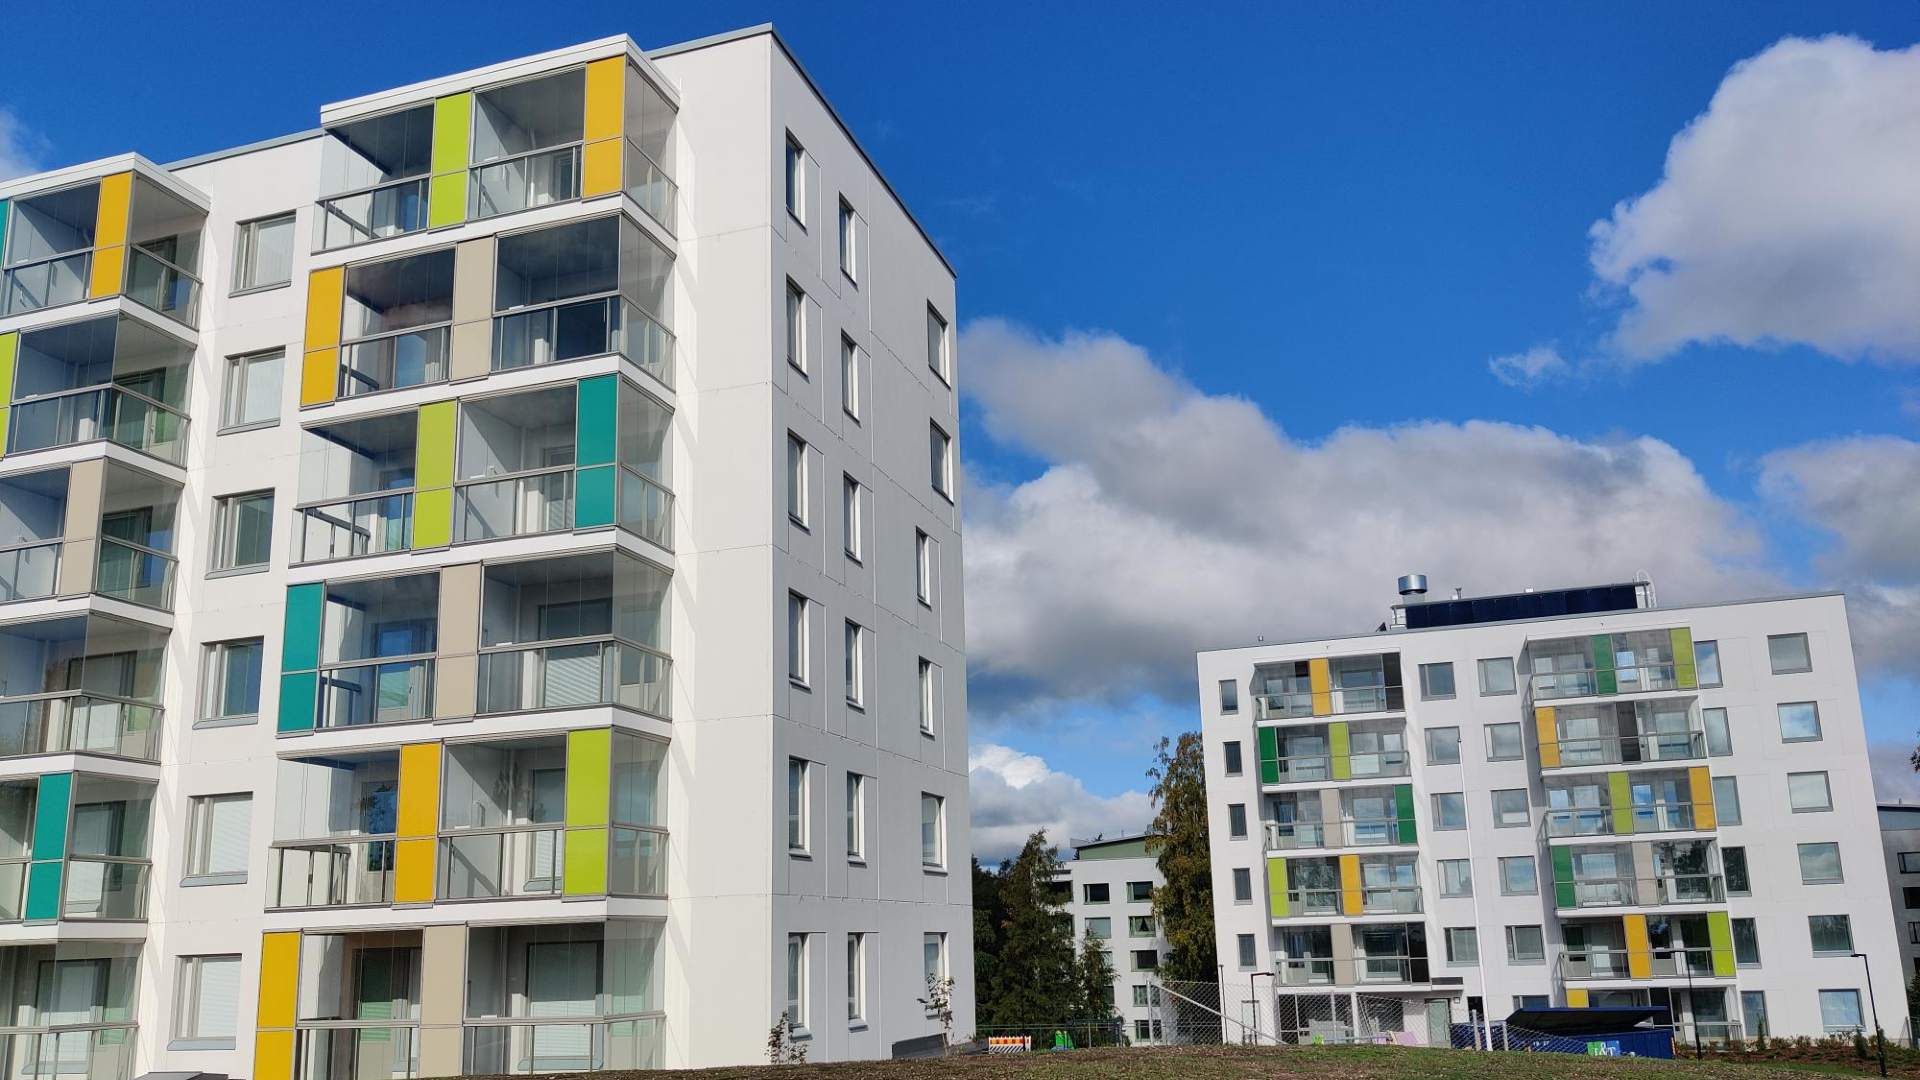 NCC:n rakentama Espoon Asuntojen ja Asuntosäätiön kerrostalokohde sai Joutsenmerkin